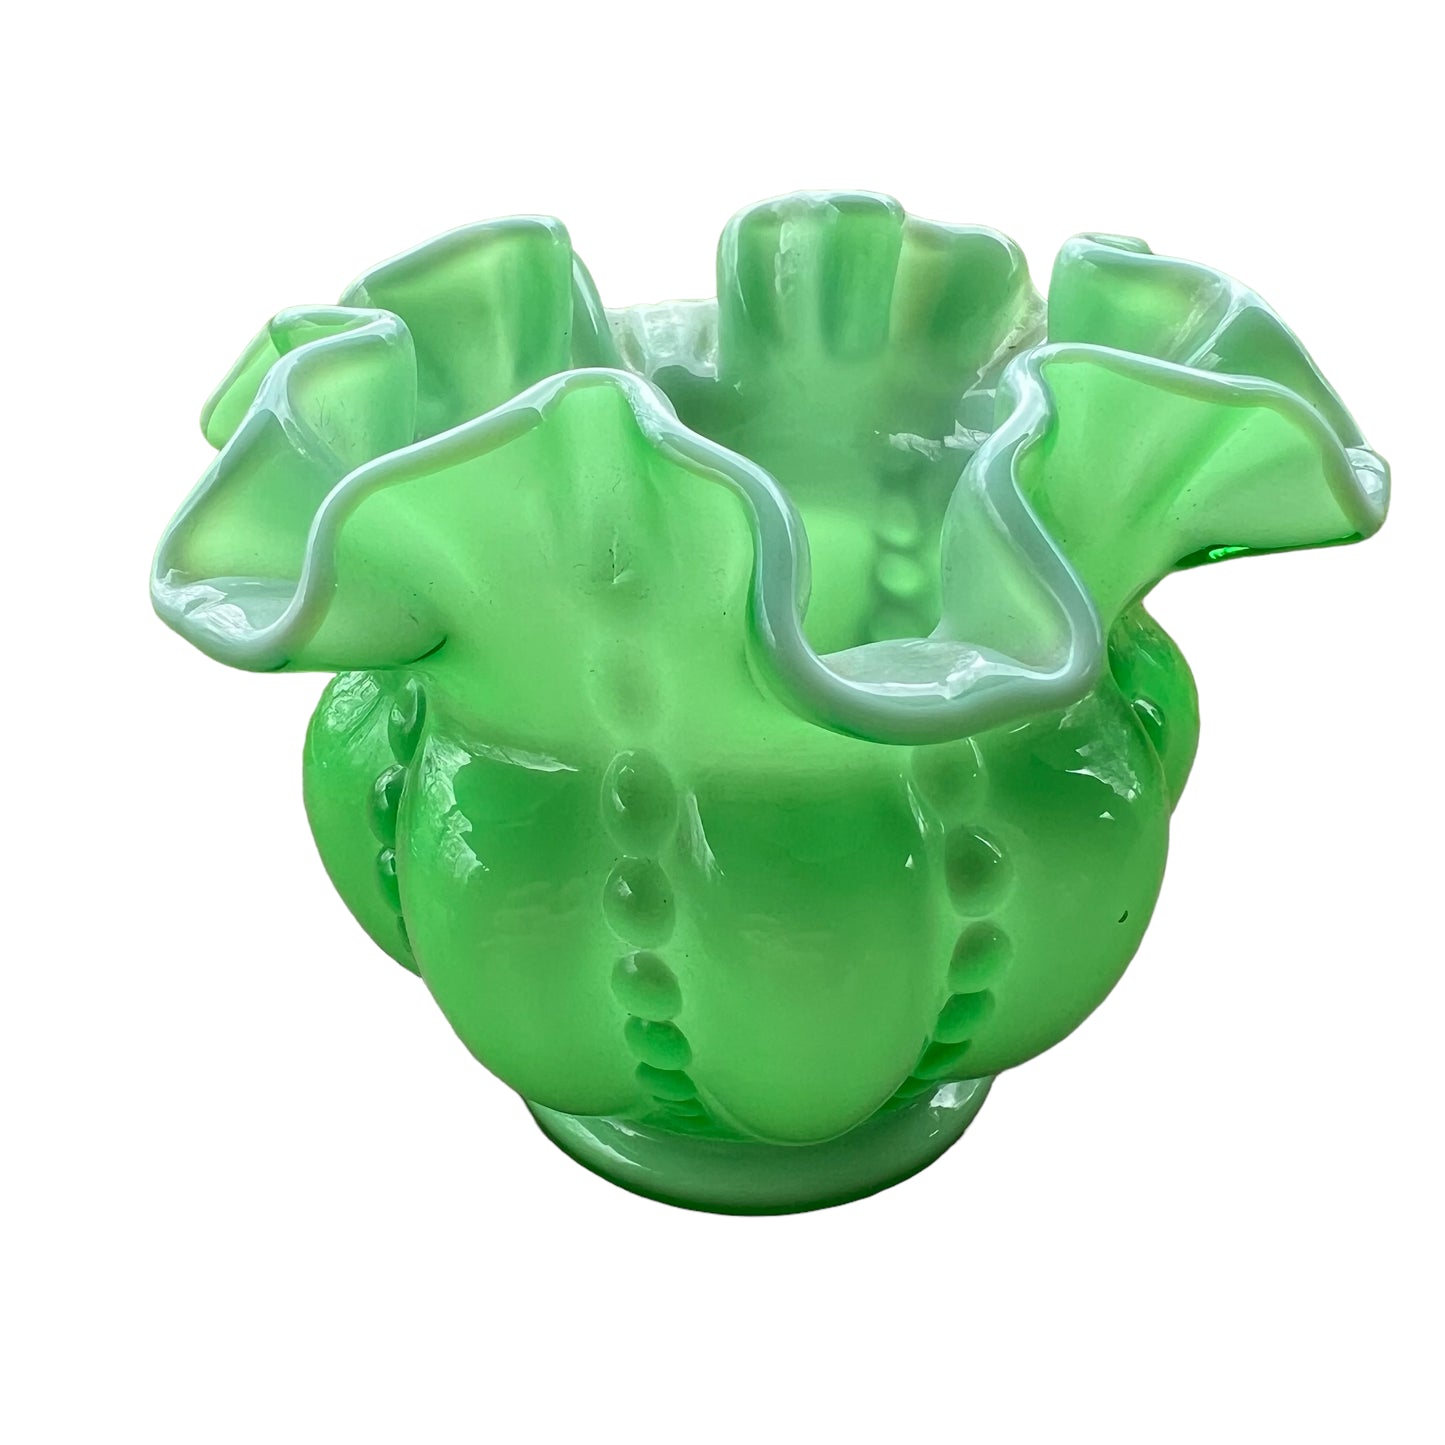 Fenton beaded melon apple/ivy green over white cased vase / rose bowl / pre-logo